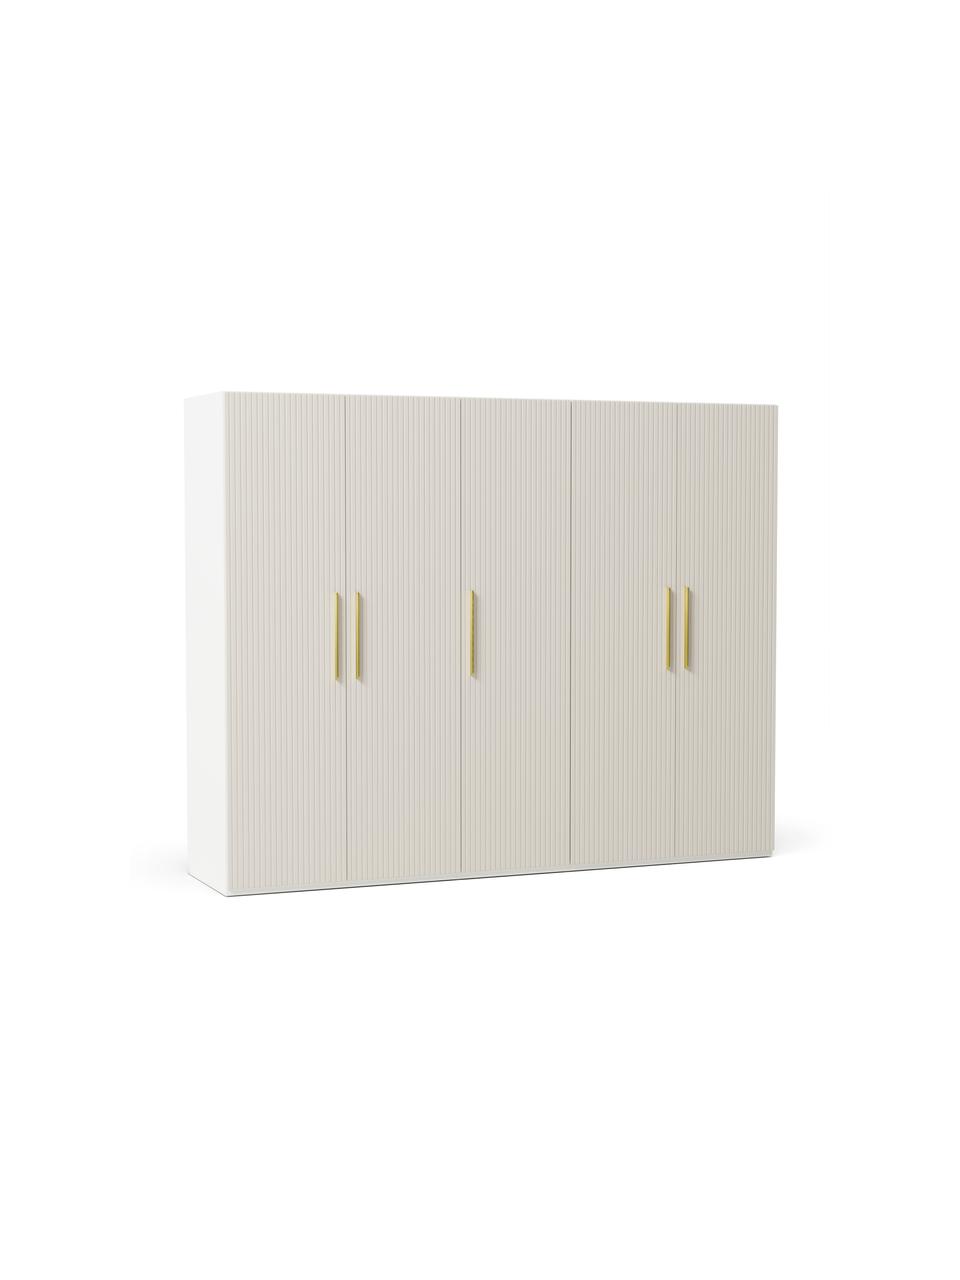 Armoire modulaire beige Simone, largeur 250 cm, plusieurs variantes, Beige, Basic Interior, hauteur 200 cm